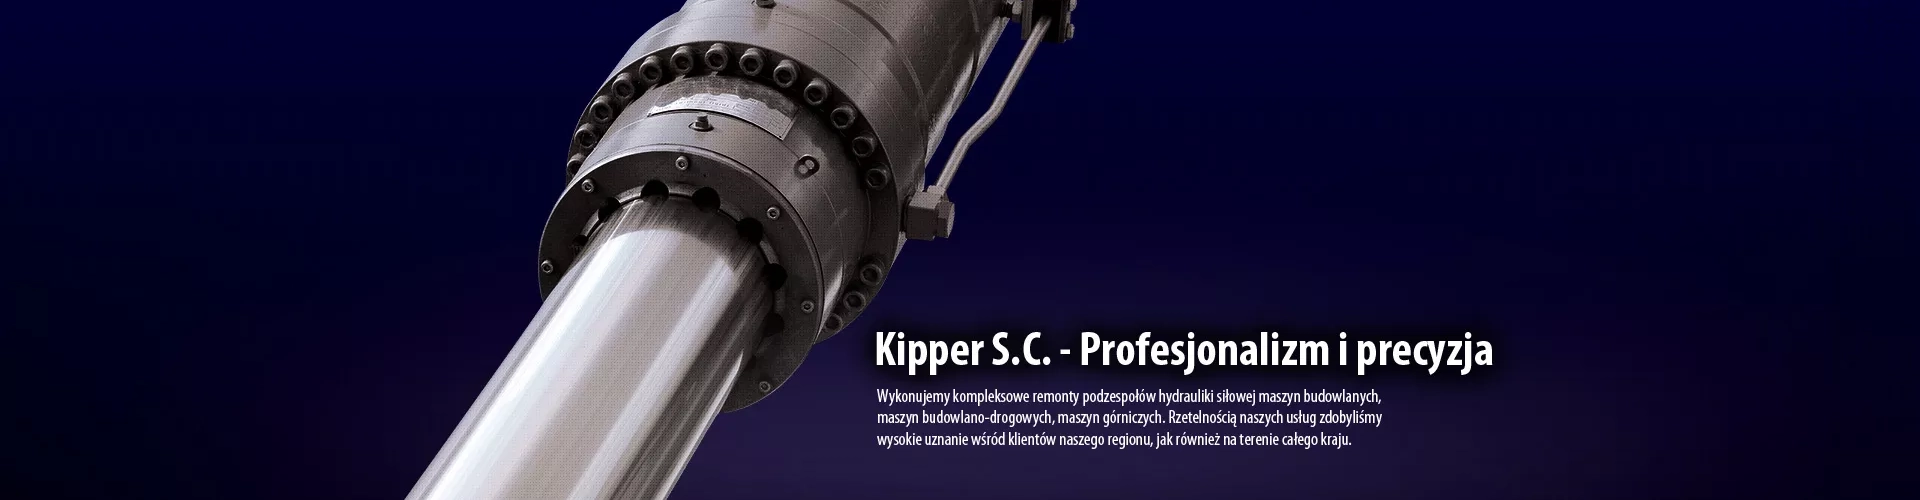  Banner Kipper - profesjonalizm i precyzja 